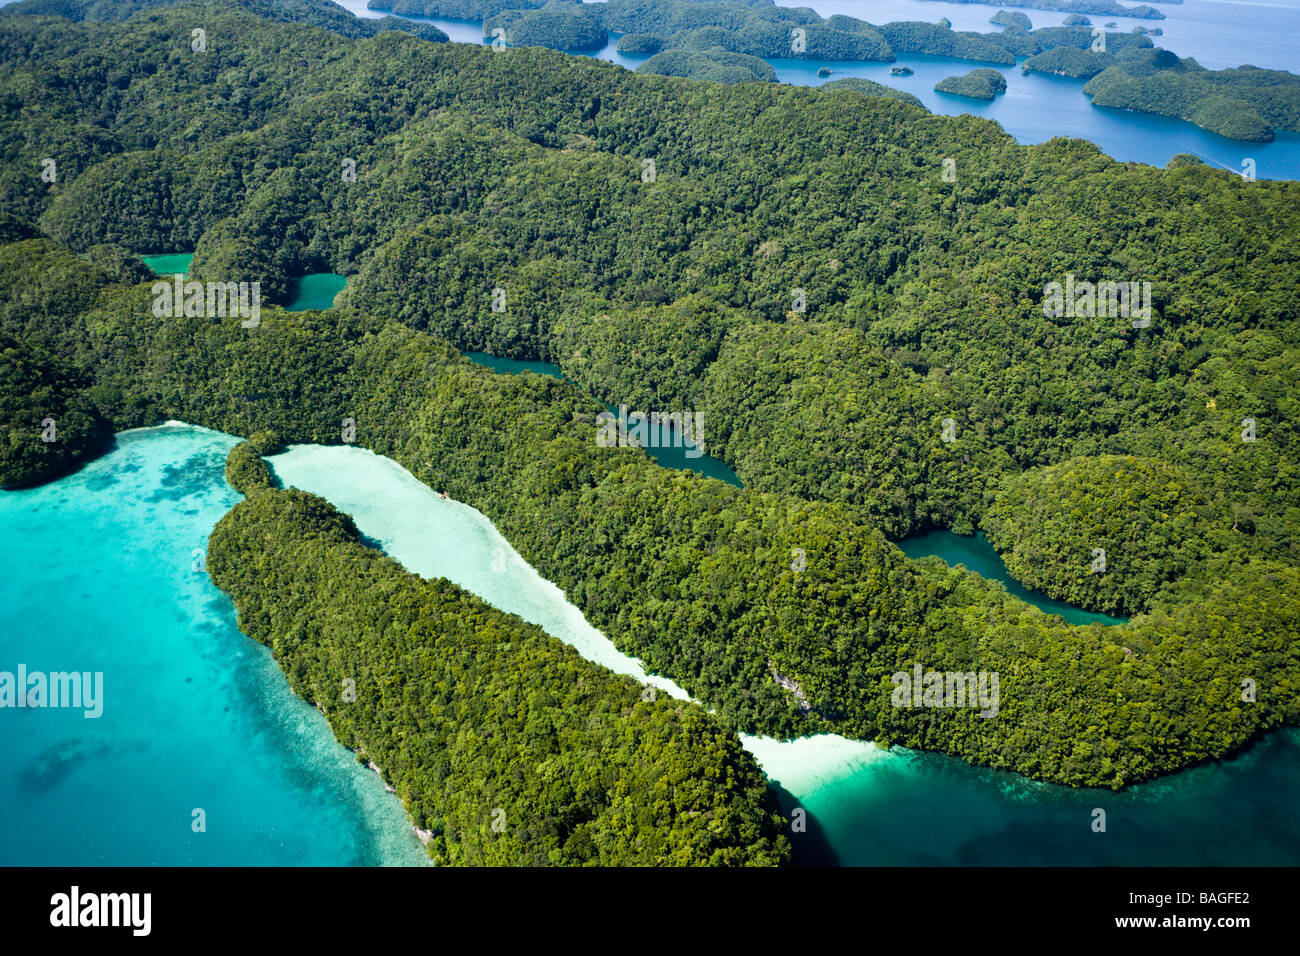 Islands of Palau Micronesia Palau Stock Photo